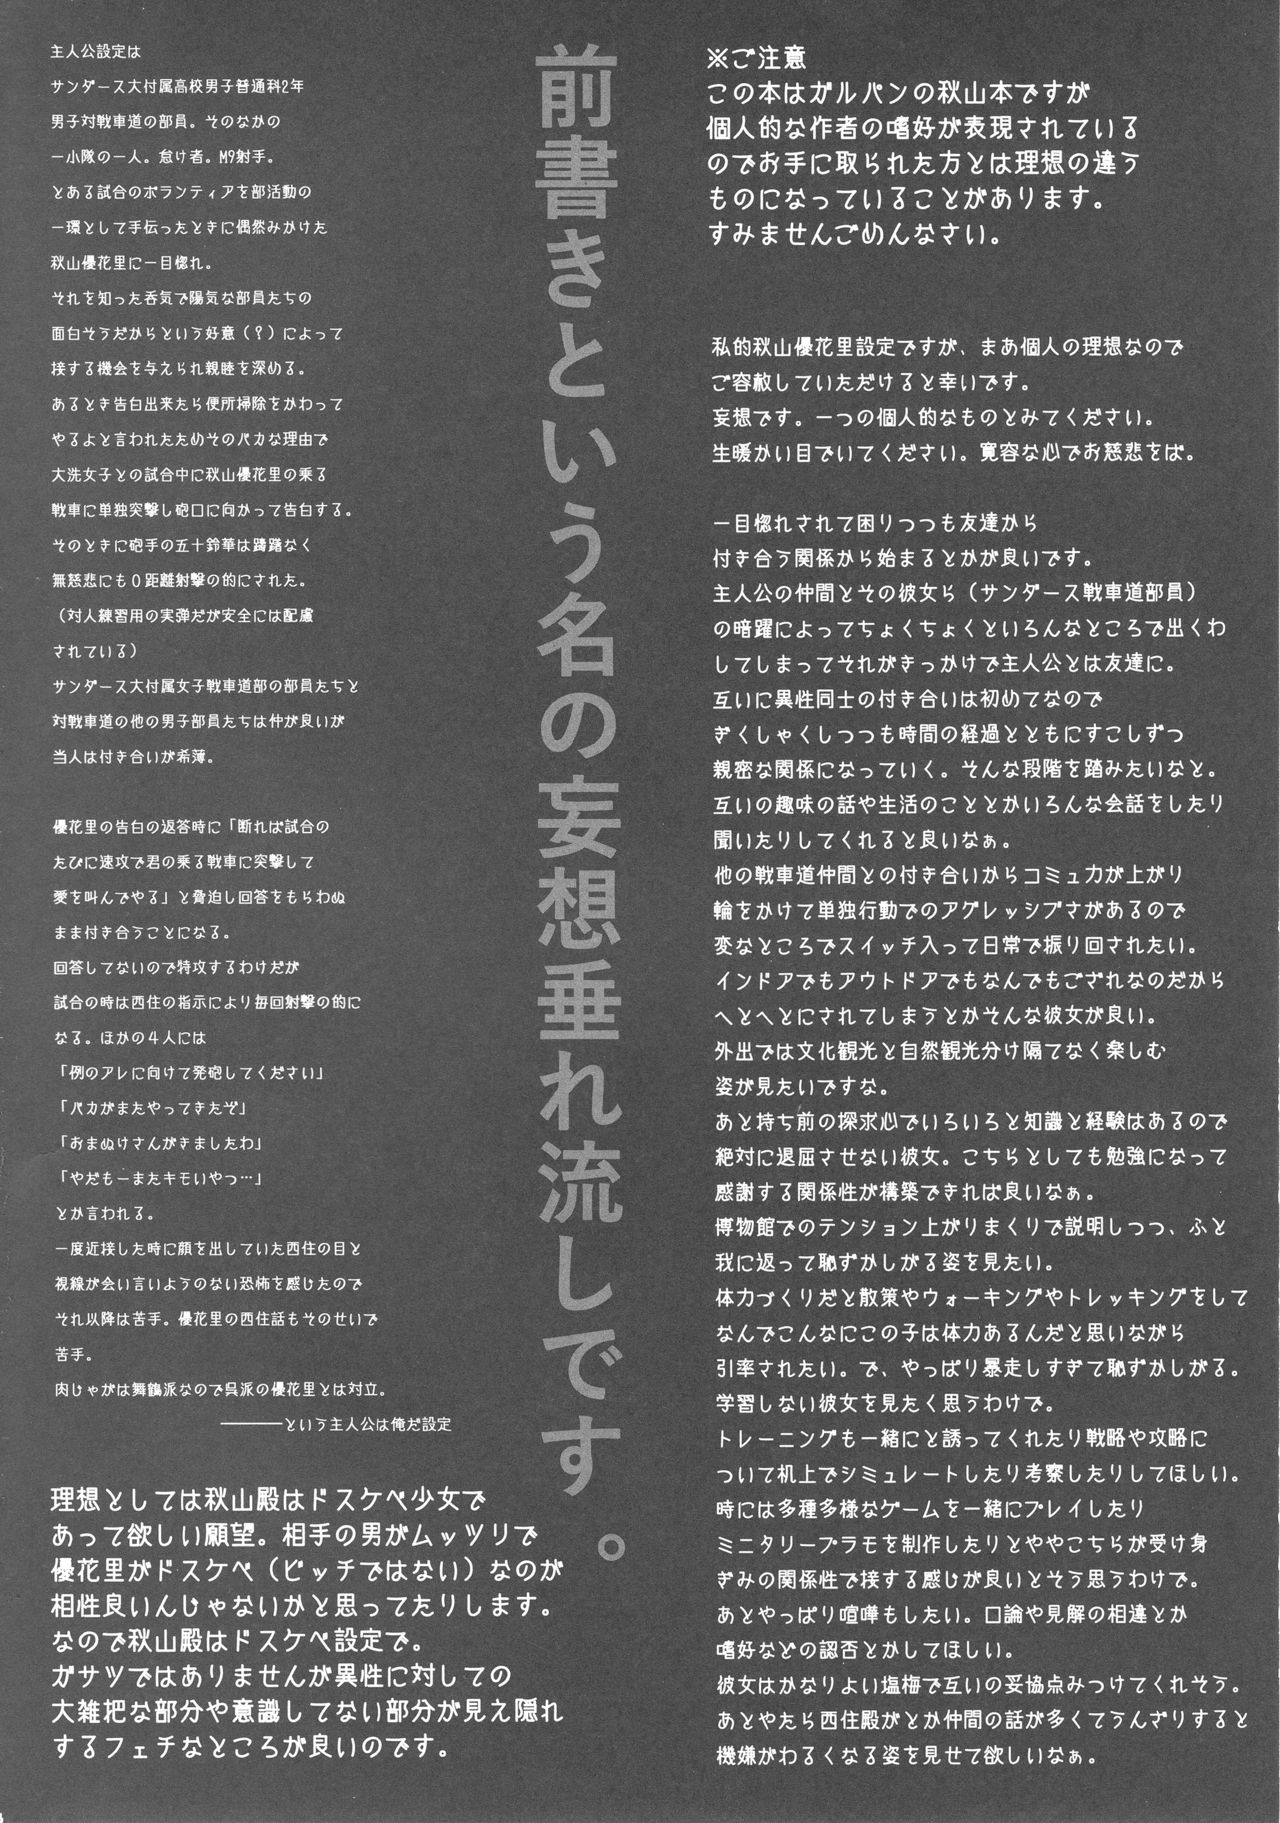 (COMIC1☆13) [Shirando (Shiran Takashi)] Akiyama-dono Mousou Nikki (Girls und Panzer) (COMIC1☆13) [熾鸞堂 (しらんたかし)] 秋山殿妄想日記 (ガールズ&パンツァー)